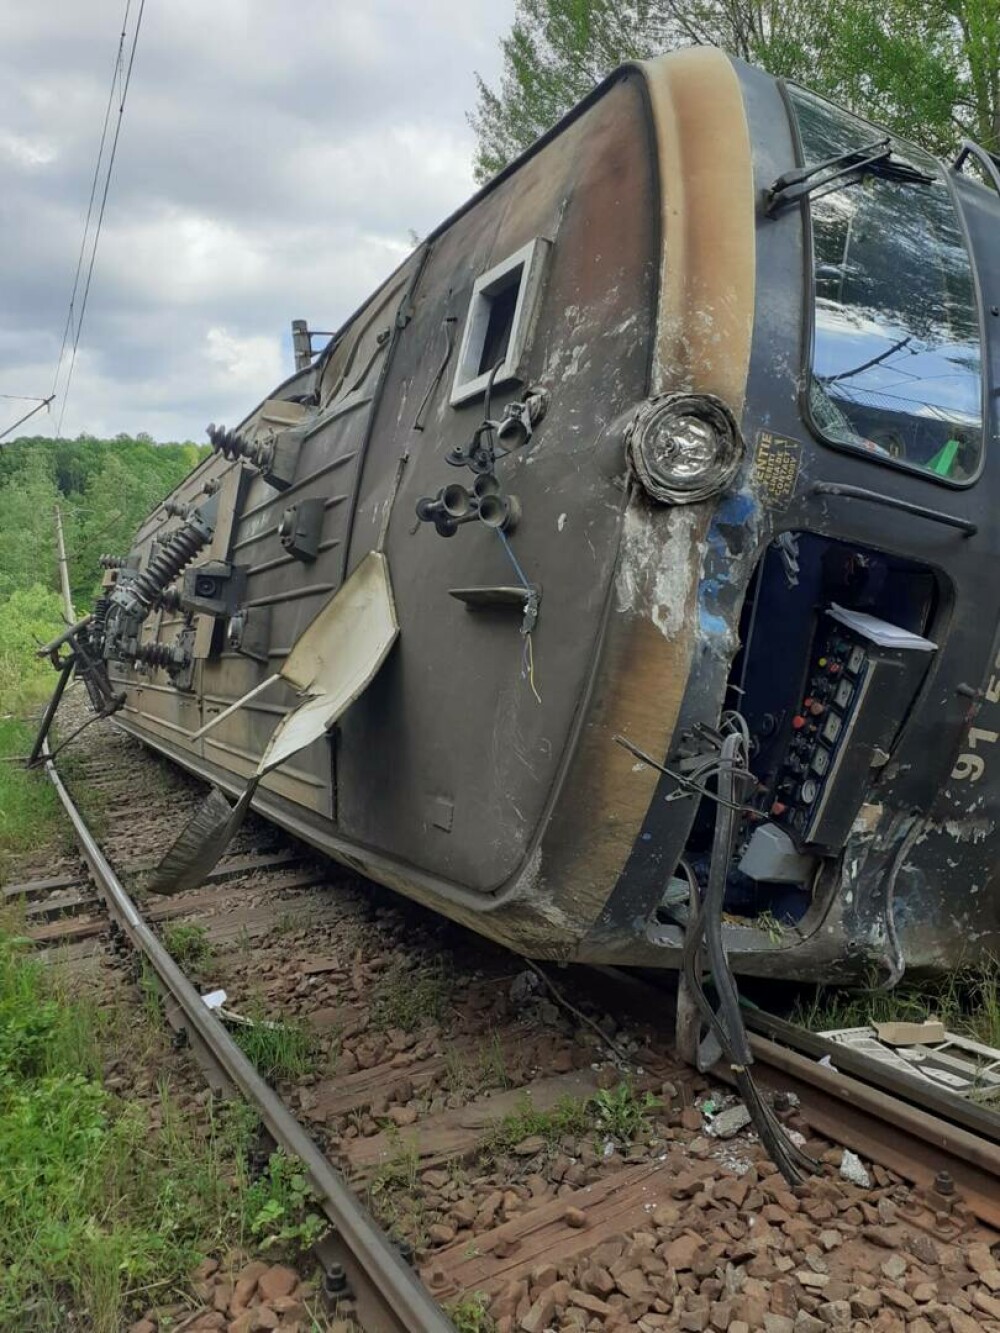 Locomotivă răsturnată pe calea ferată în județul Hunedoara. Mecanicul a fost transportat la spital - Imaginea 3